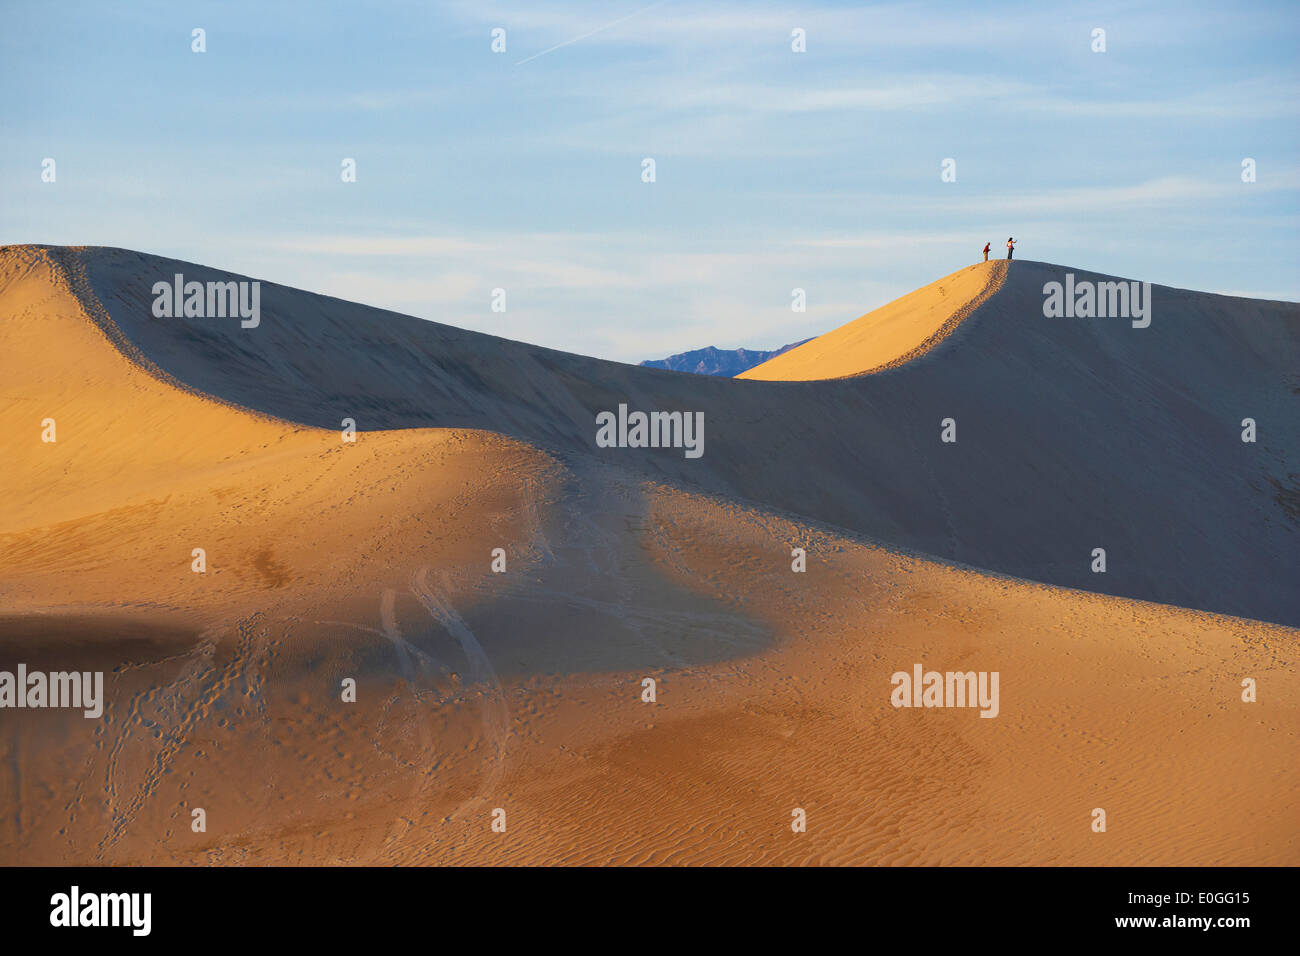 Avis de Mesquite Flat dunes de sable dans la lumière du soir, la Death Valley National Park, California, USA, Amérique Latine Banque D'Images